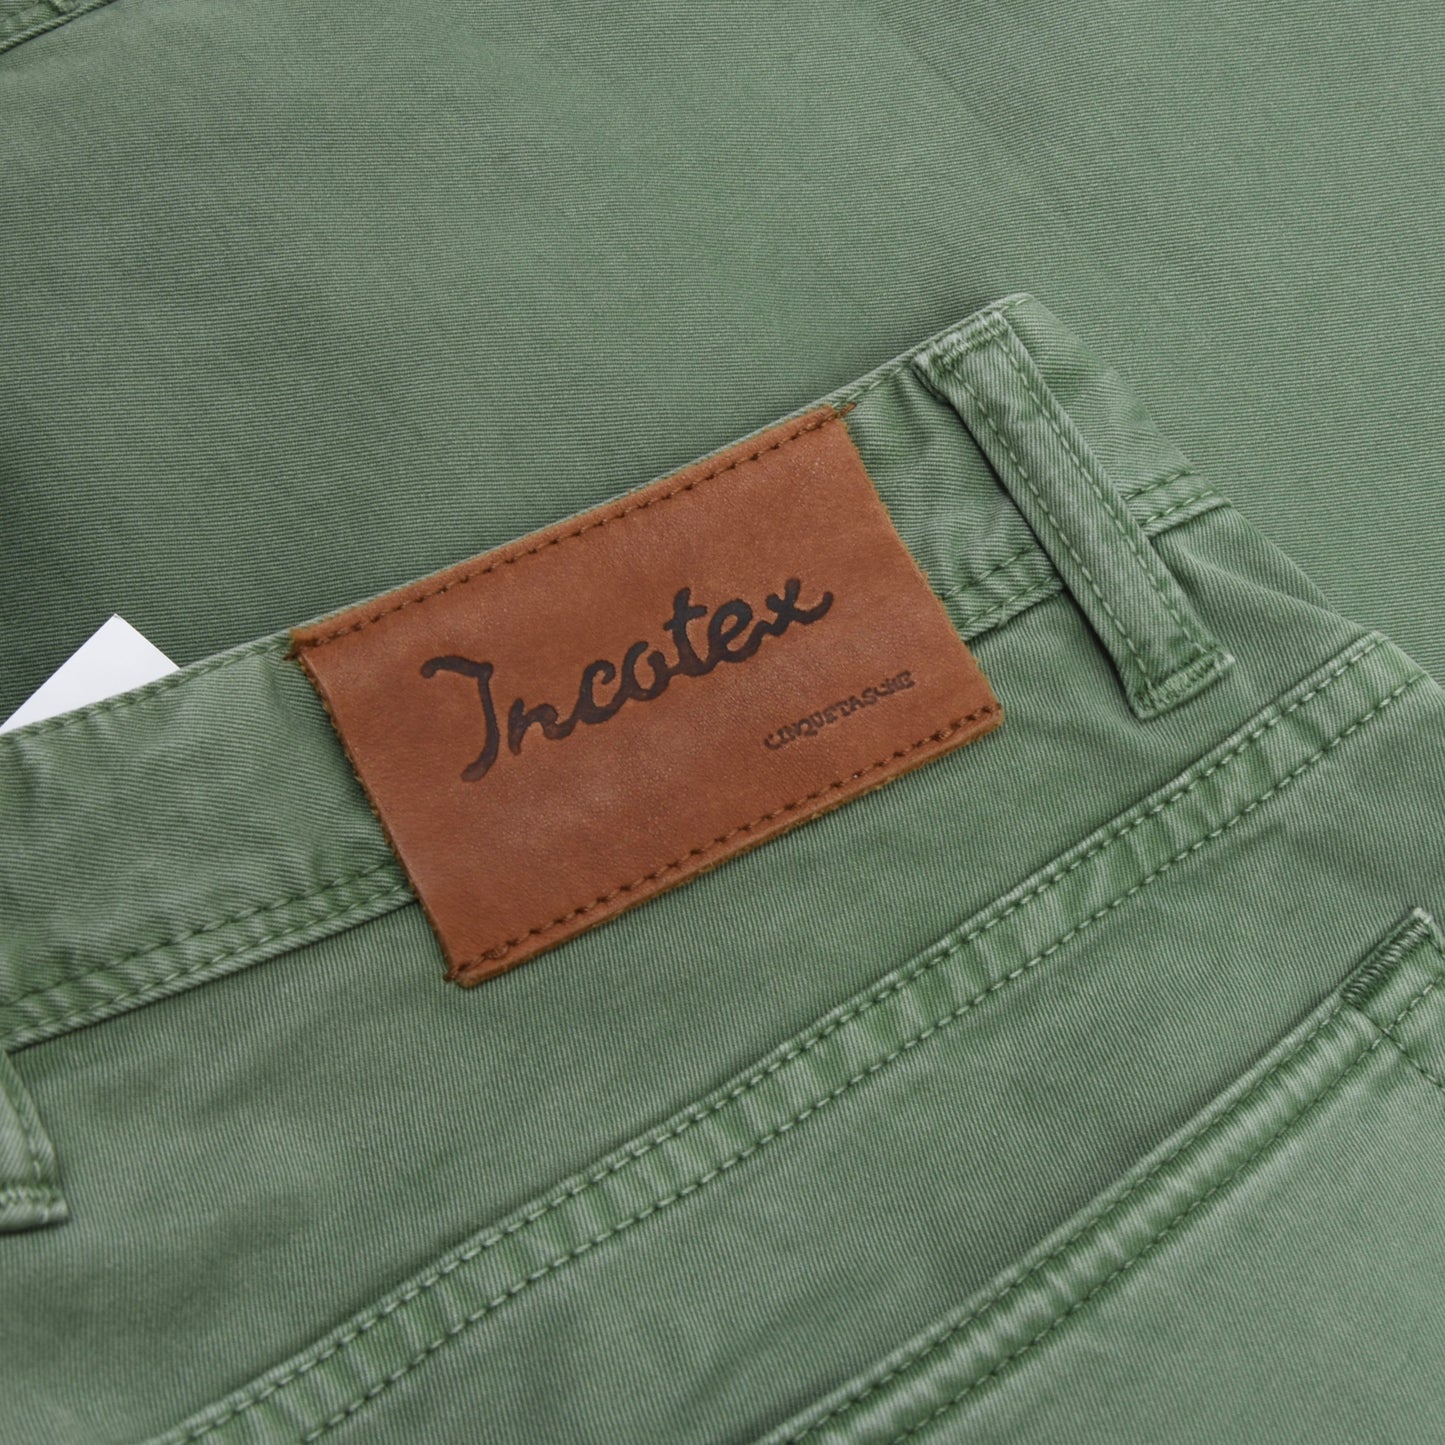 Incotex 5 Pocket Cotton Pants Size 34 - Green